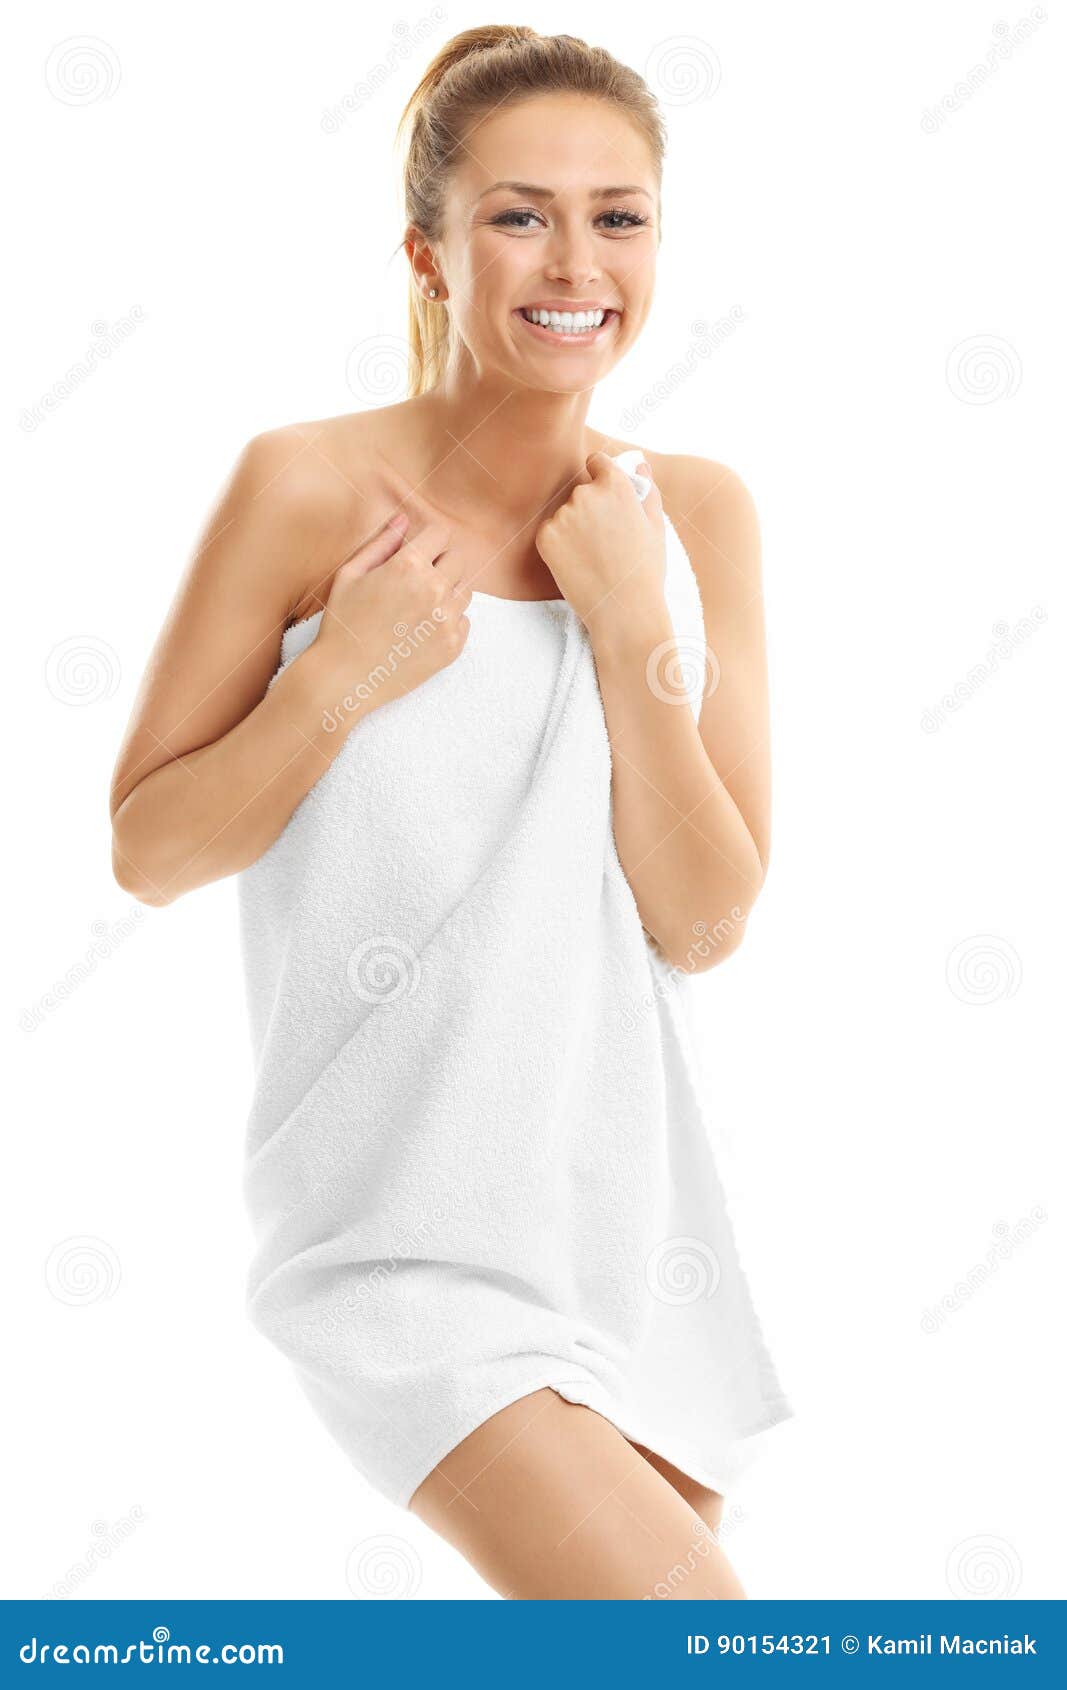 Упало полотенце перед. Девушка в полотенце. Женщина под полотенцем. Женщина без полотенца. Девушка с полотенцем на плече.